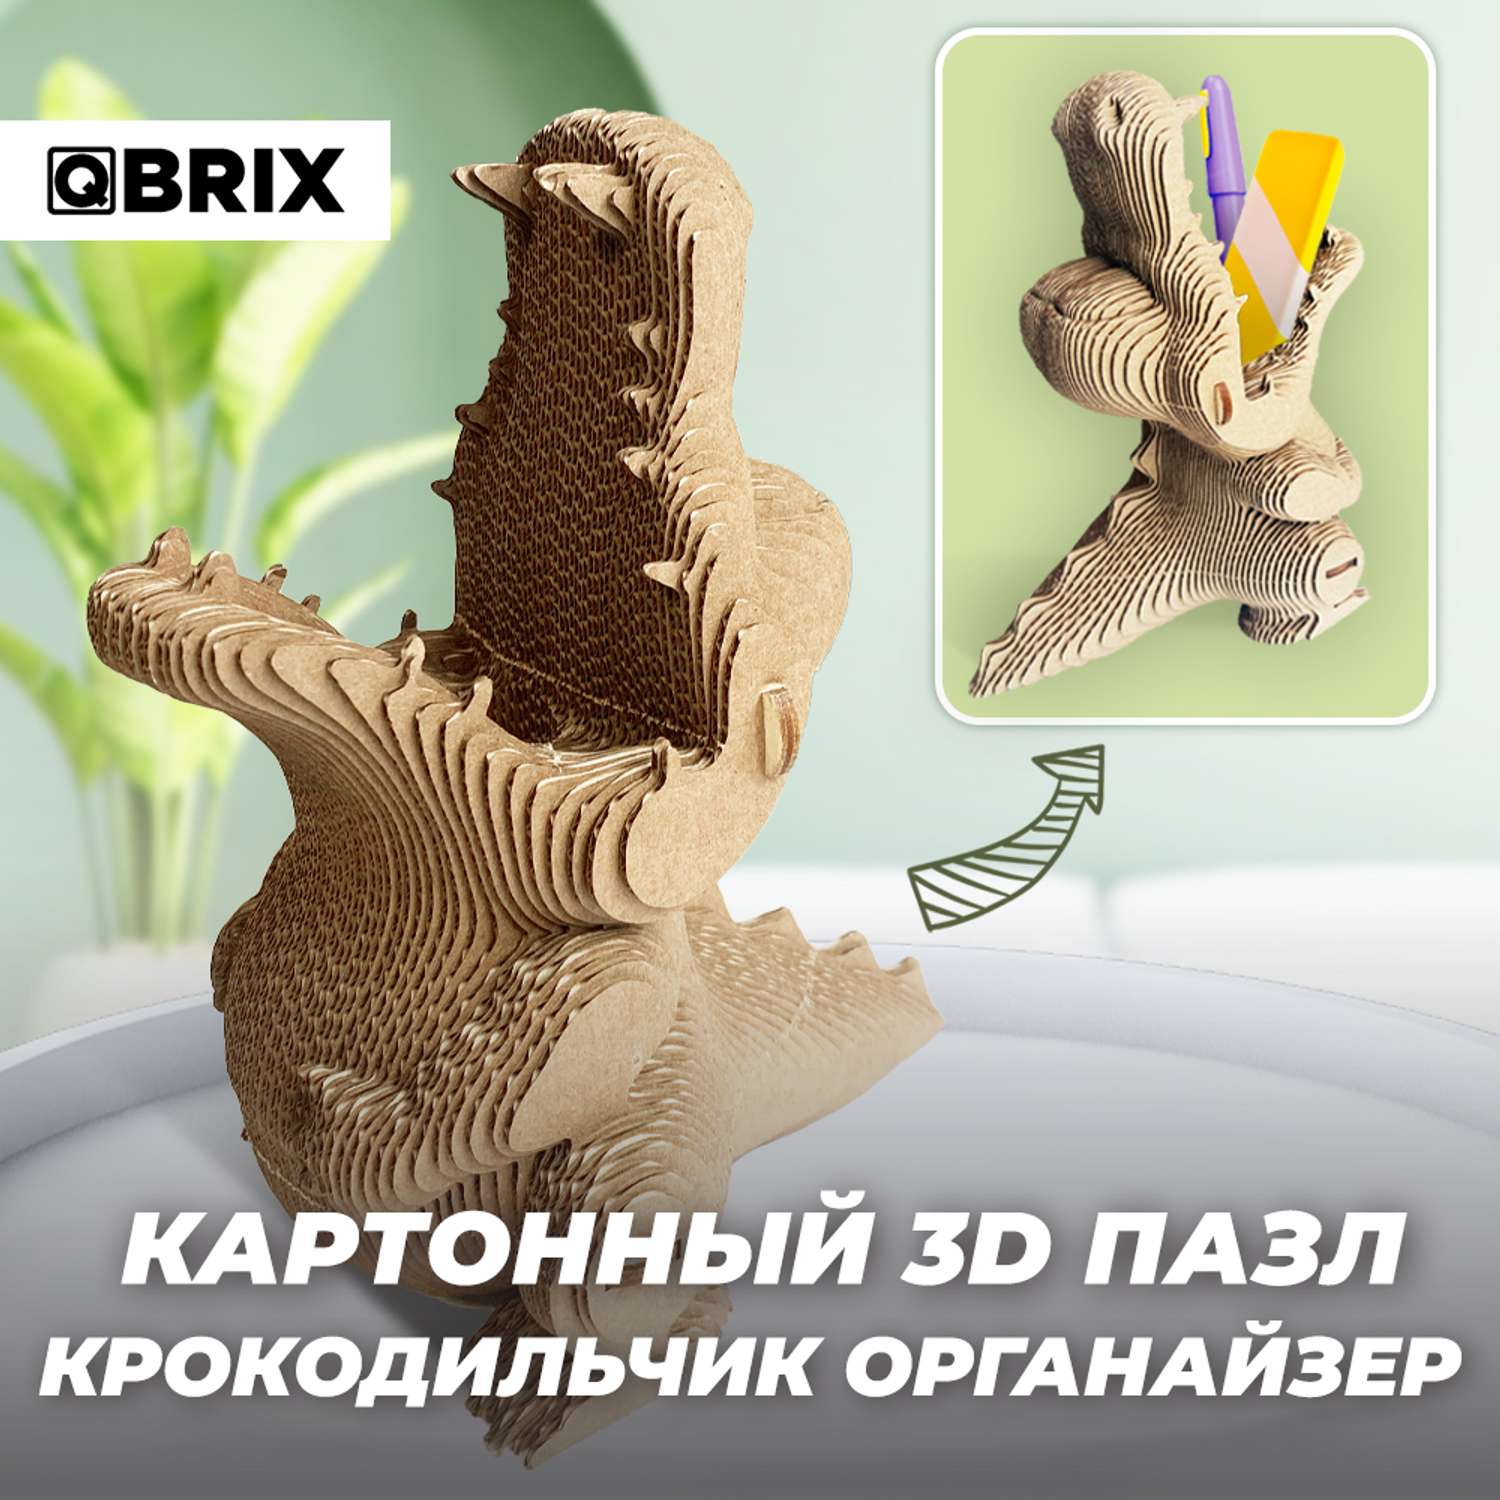 Конструктор QBRIX 3D картонный Крокодильчик органайзер 20037 20037 - фото 2